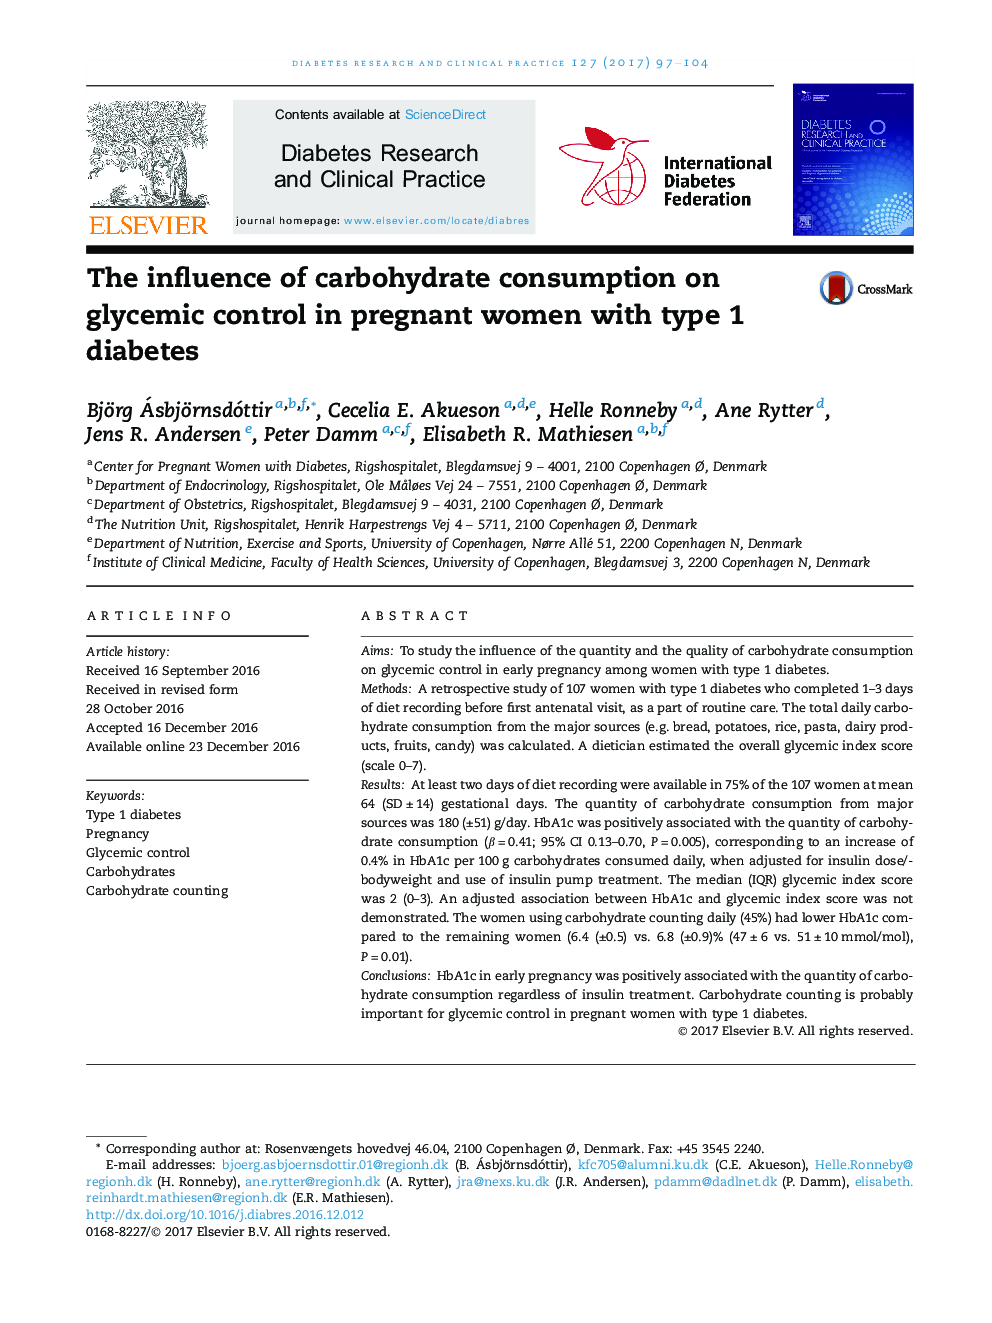 تأثیر مصرف کربوهیدرات بر کنترل گلیسمی در زنان باردار مبتلا به دیابت نوع 1 